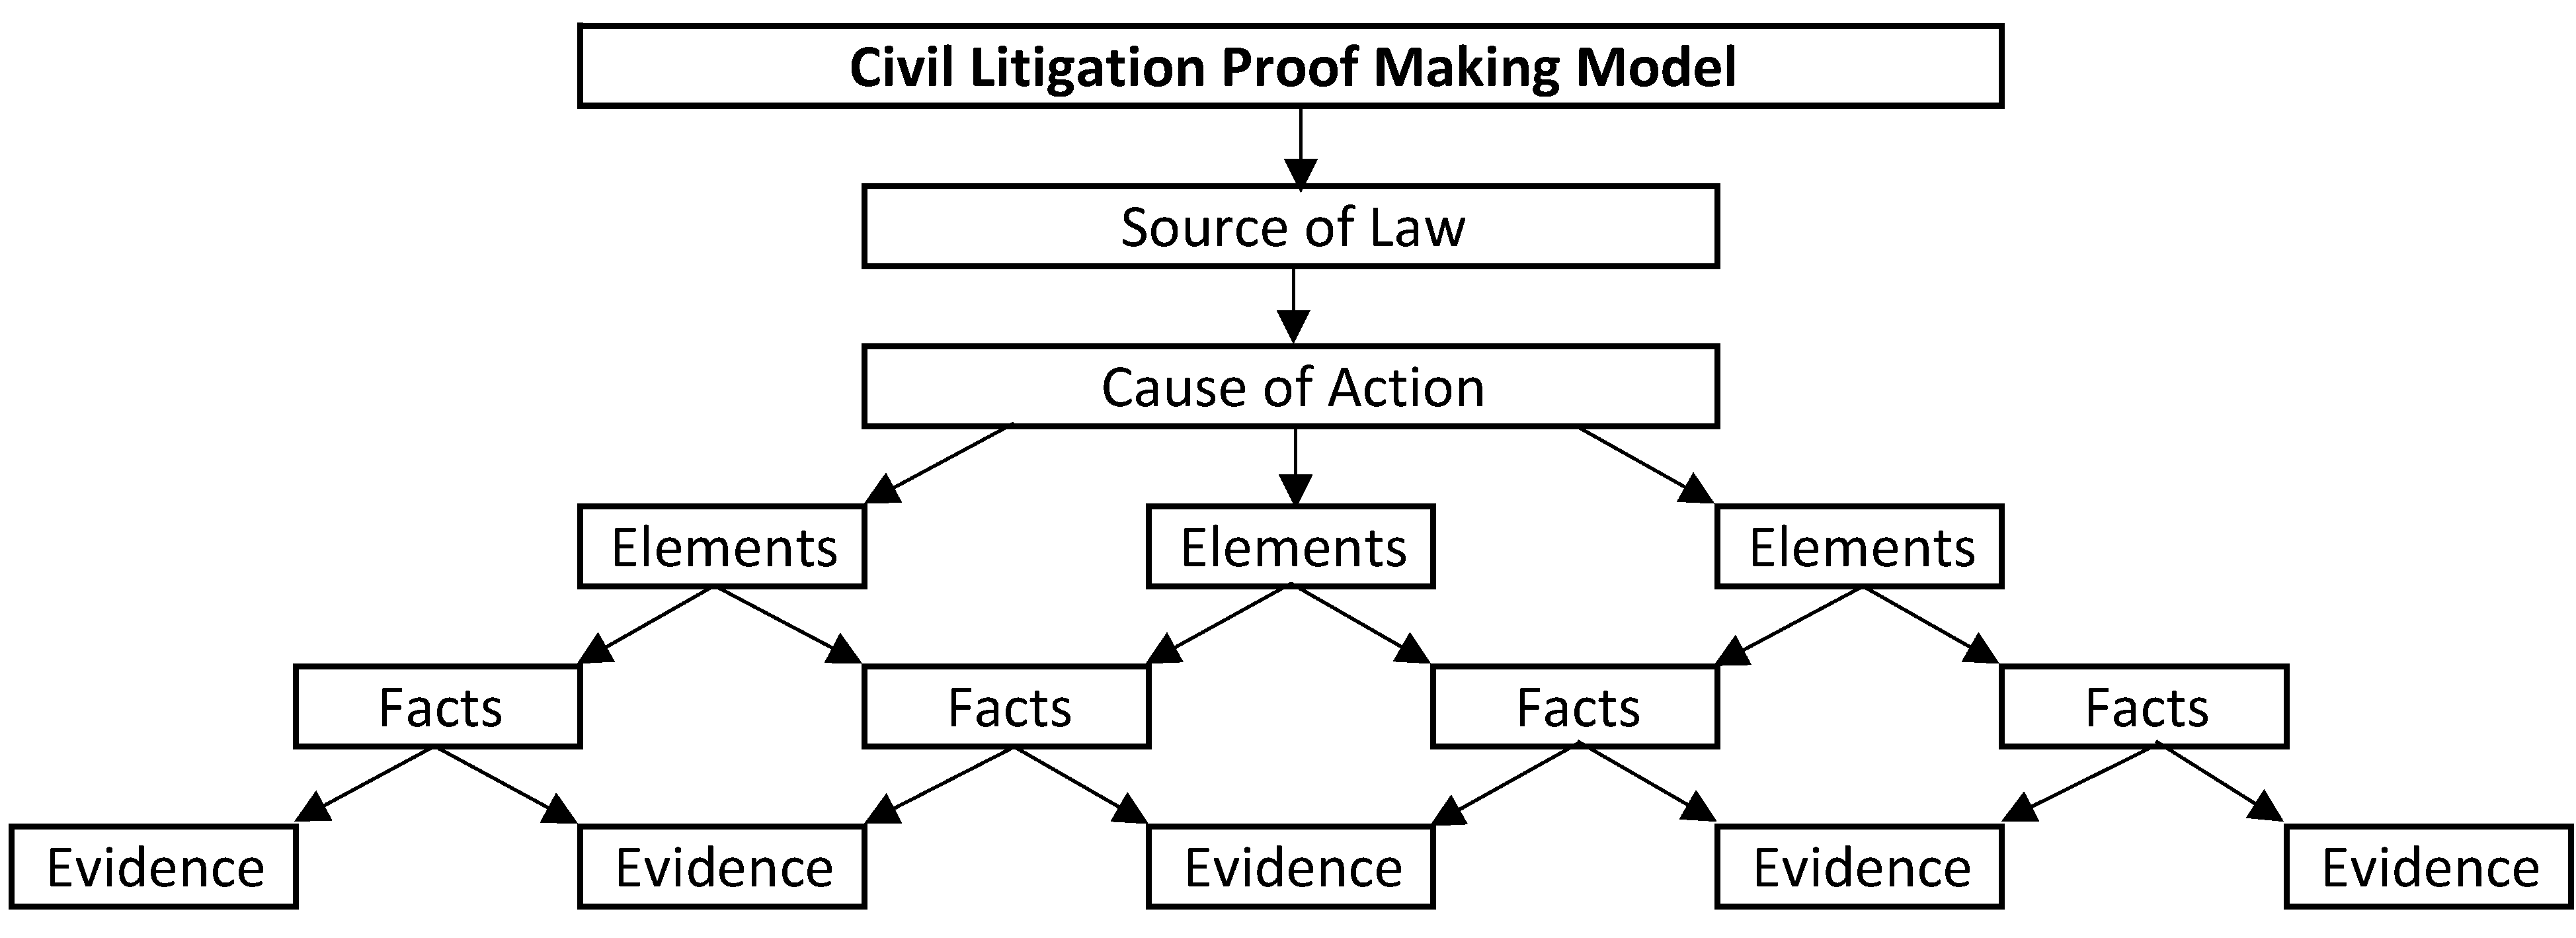 Civil Litigation Proof Making Model.png